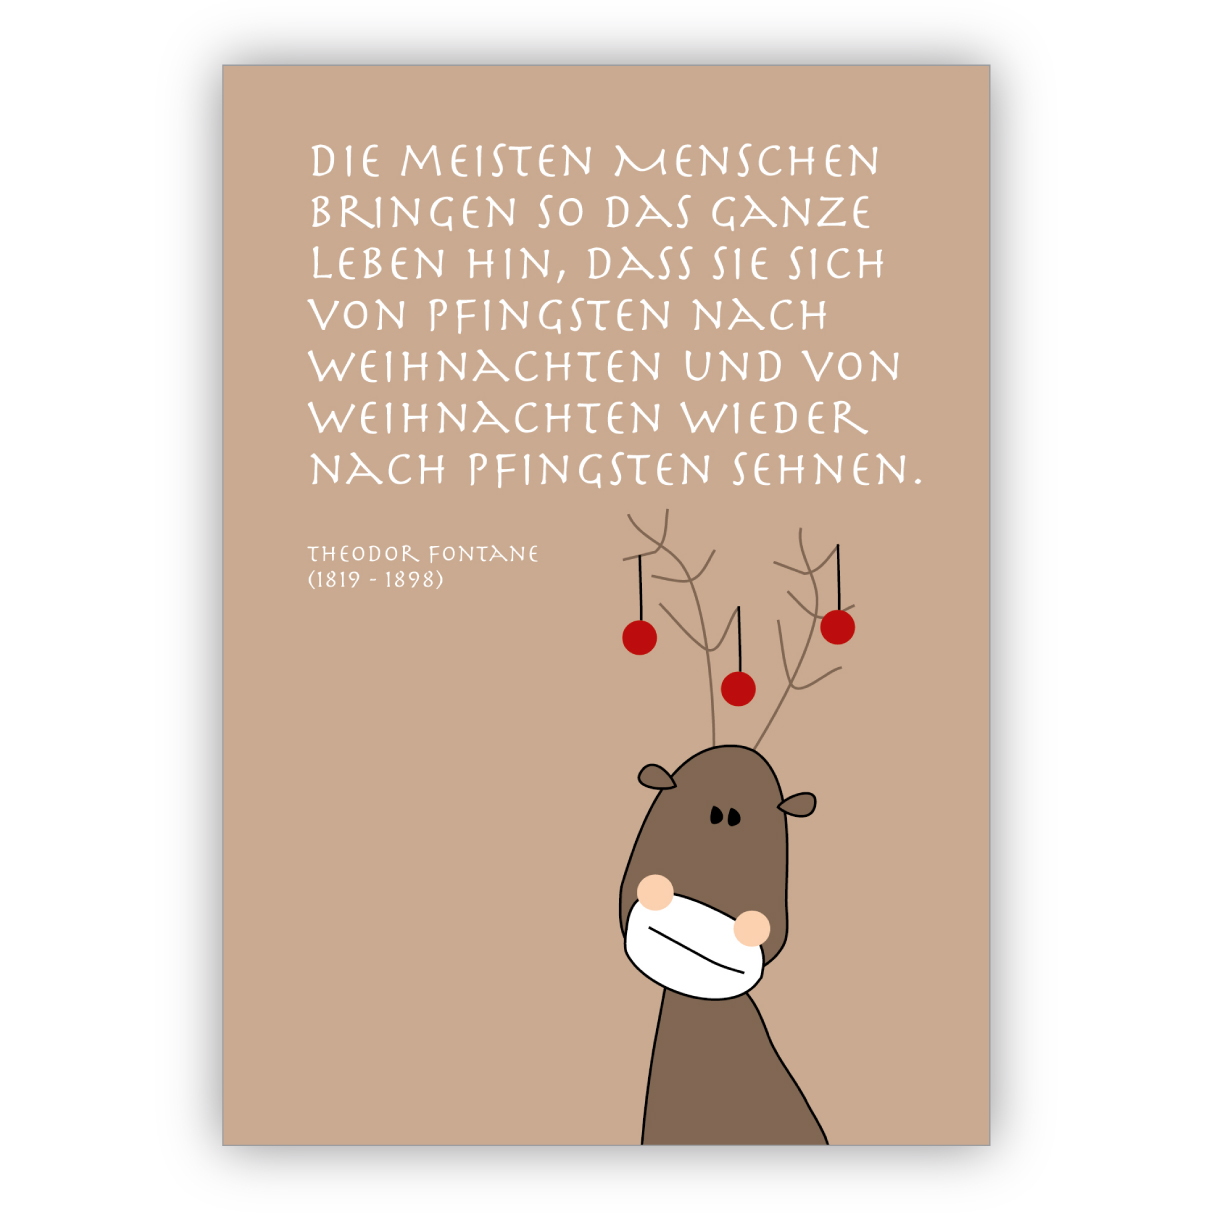 Komische Weihnachtskarte mit Elch und Fontane Zitat: Die meisten Menschen bringen so das ganze Leben hon, dass sie sich von Pfingsten nach Weihnachten und von Weihnachten wieder nach Pfingsten sehnen.